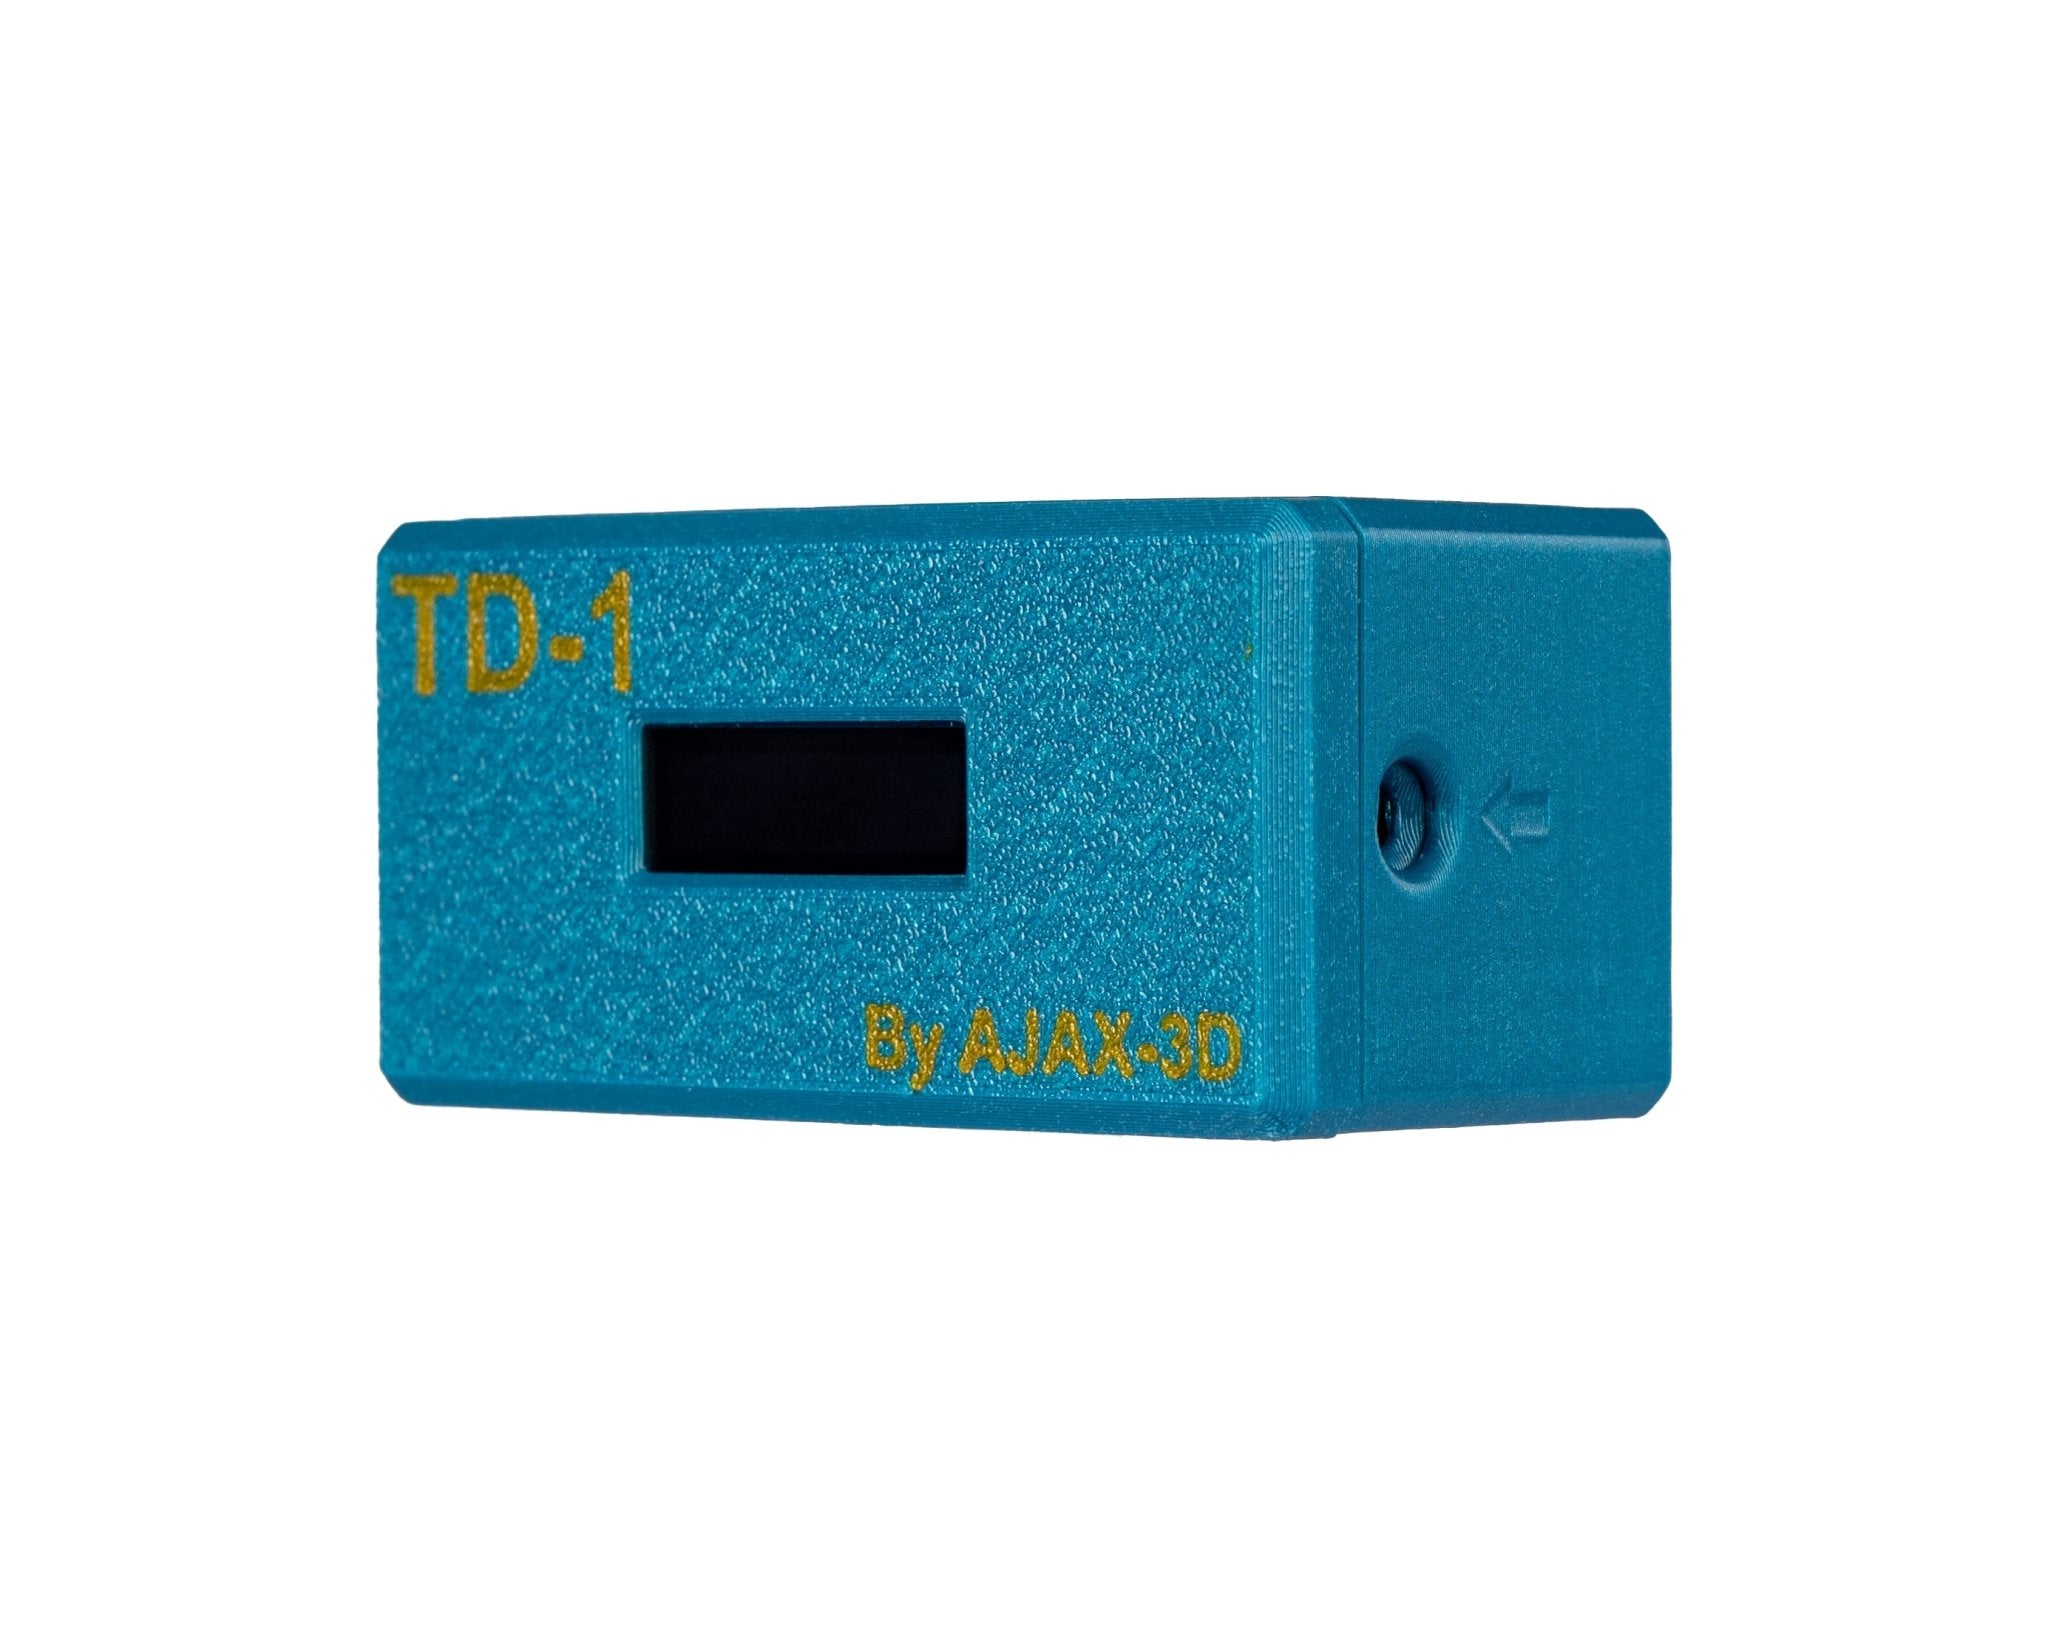 TD-1 Instant Filament TD (Transmissivity) Tester for HueForge (1.75mm Filament) by AJAX - West3D 3D Printing Supplies - West3D 3D Printing Supplies